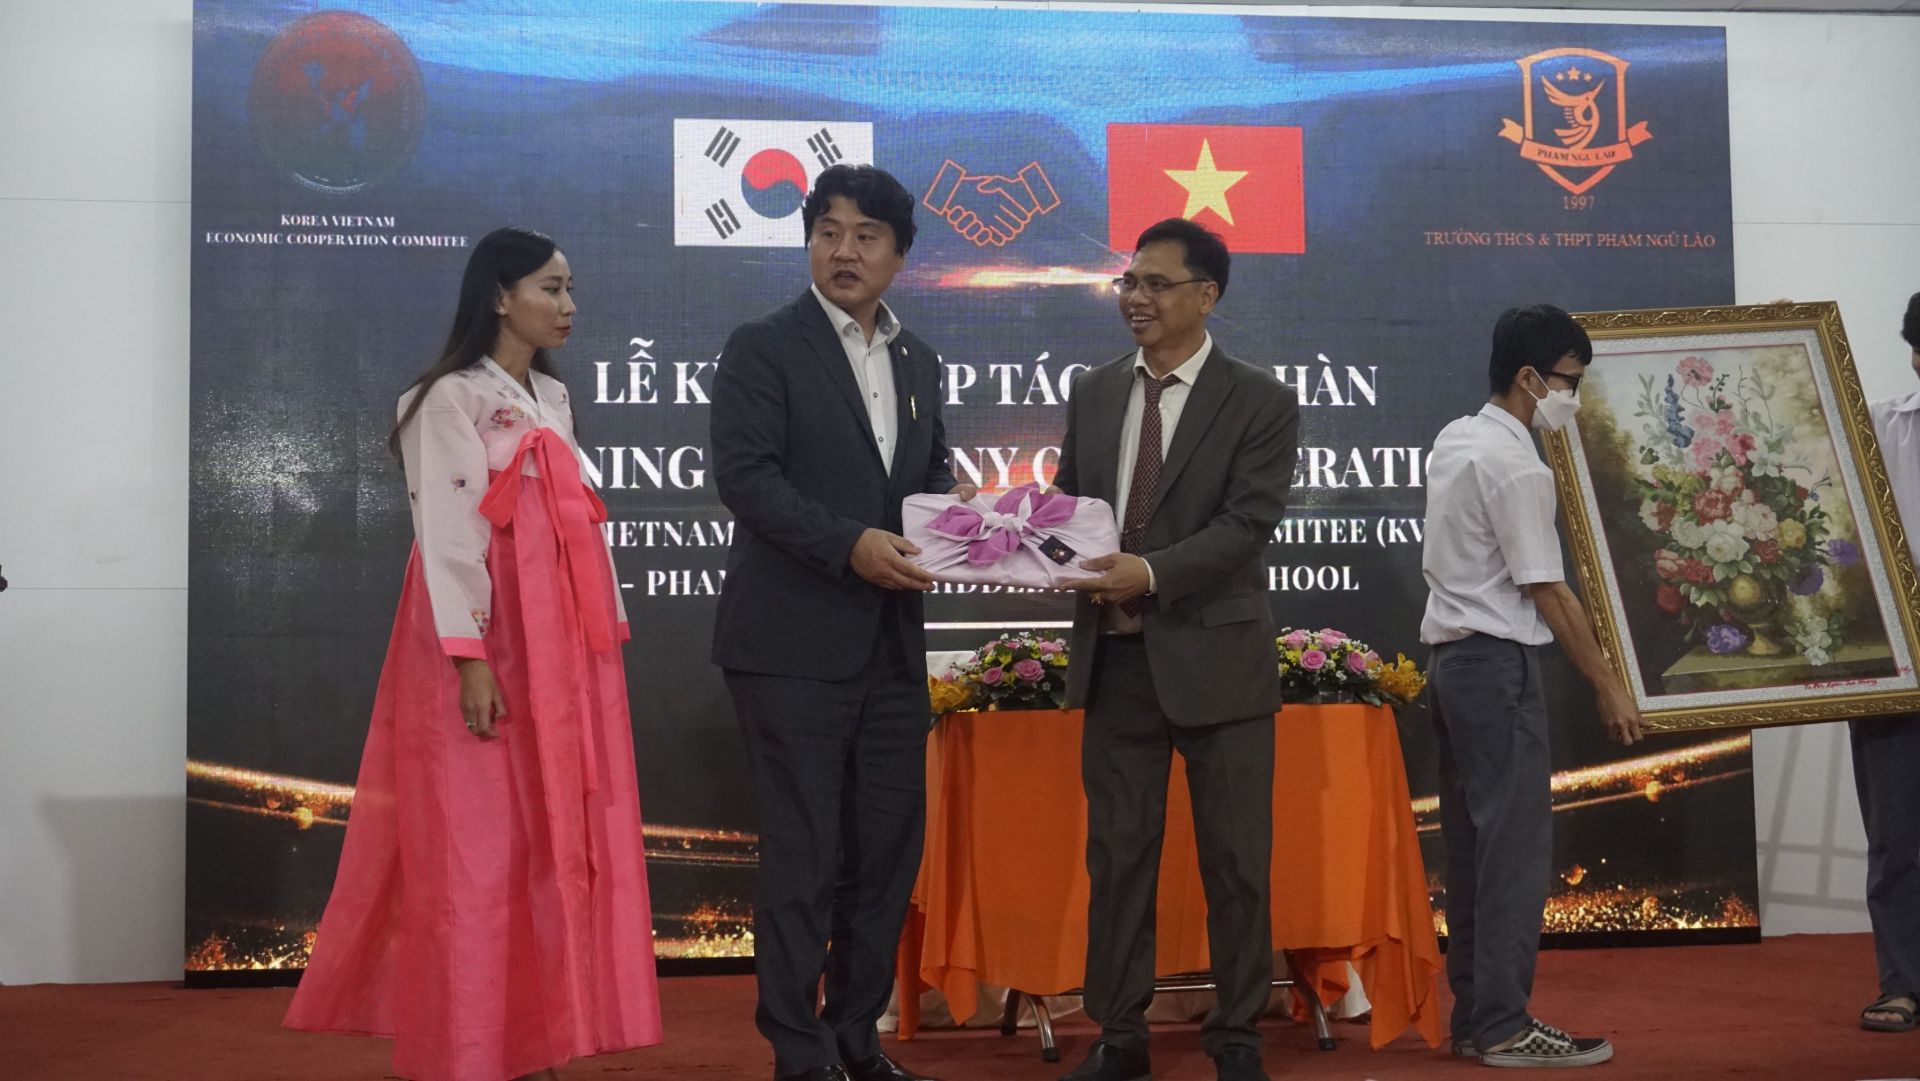 Ông Vũ Khắc Hiệp – CT HĐQT nhà trường và Ông Kwon Jae Haeng – Chủ tịch UB hỗ trợ kinh tế Hàn – Việt trao quà lưu niệm.